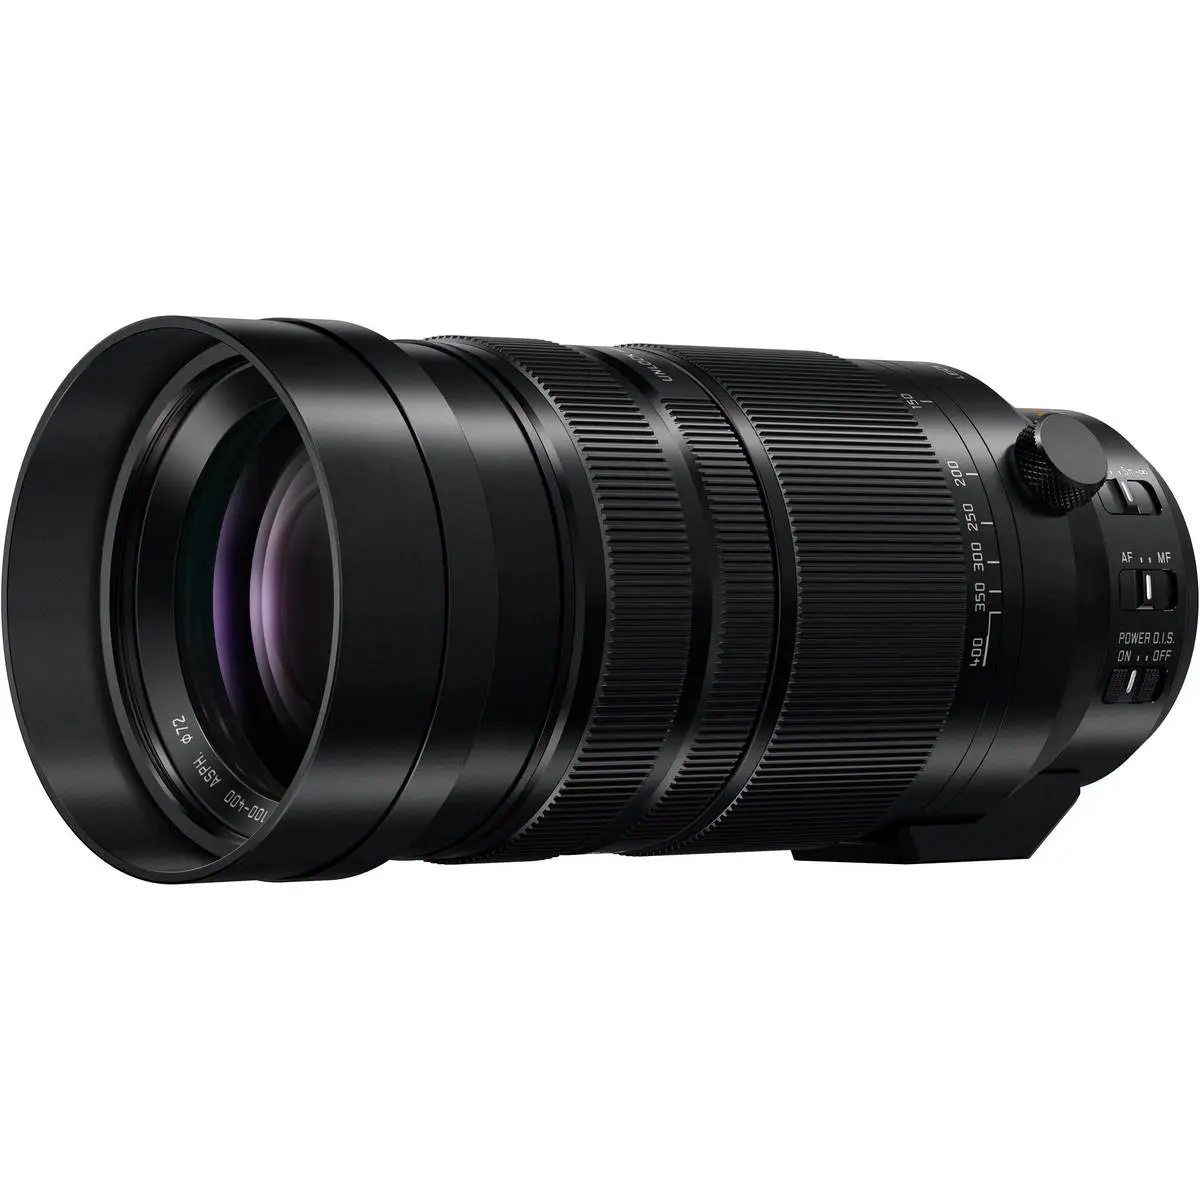 3. Panasonic DG V-Elmar 100-400mm F4.0-6.3 ASPH OIS Lens